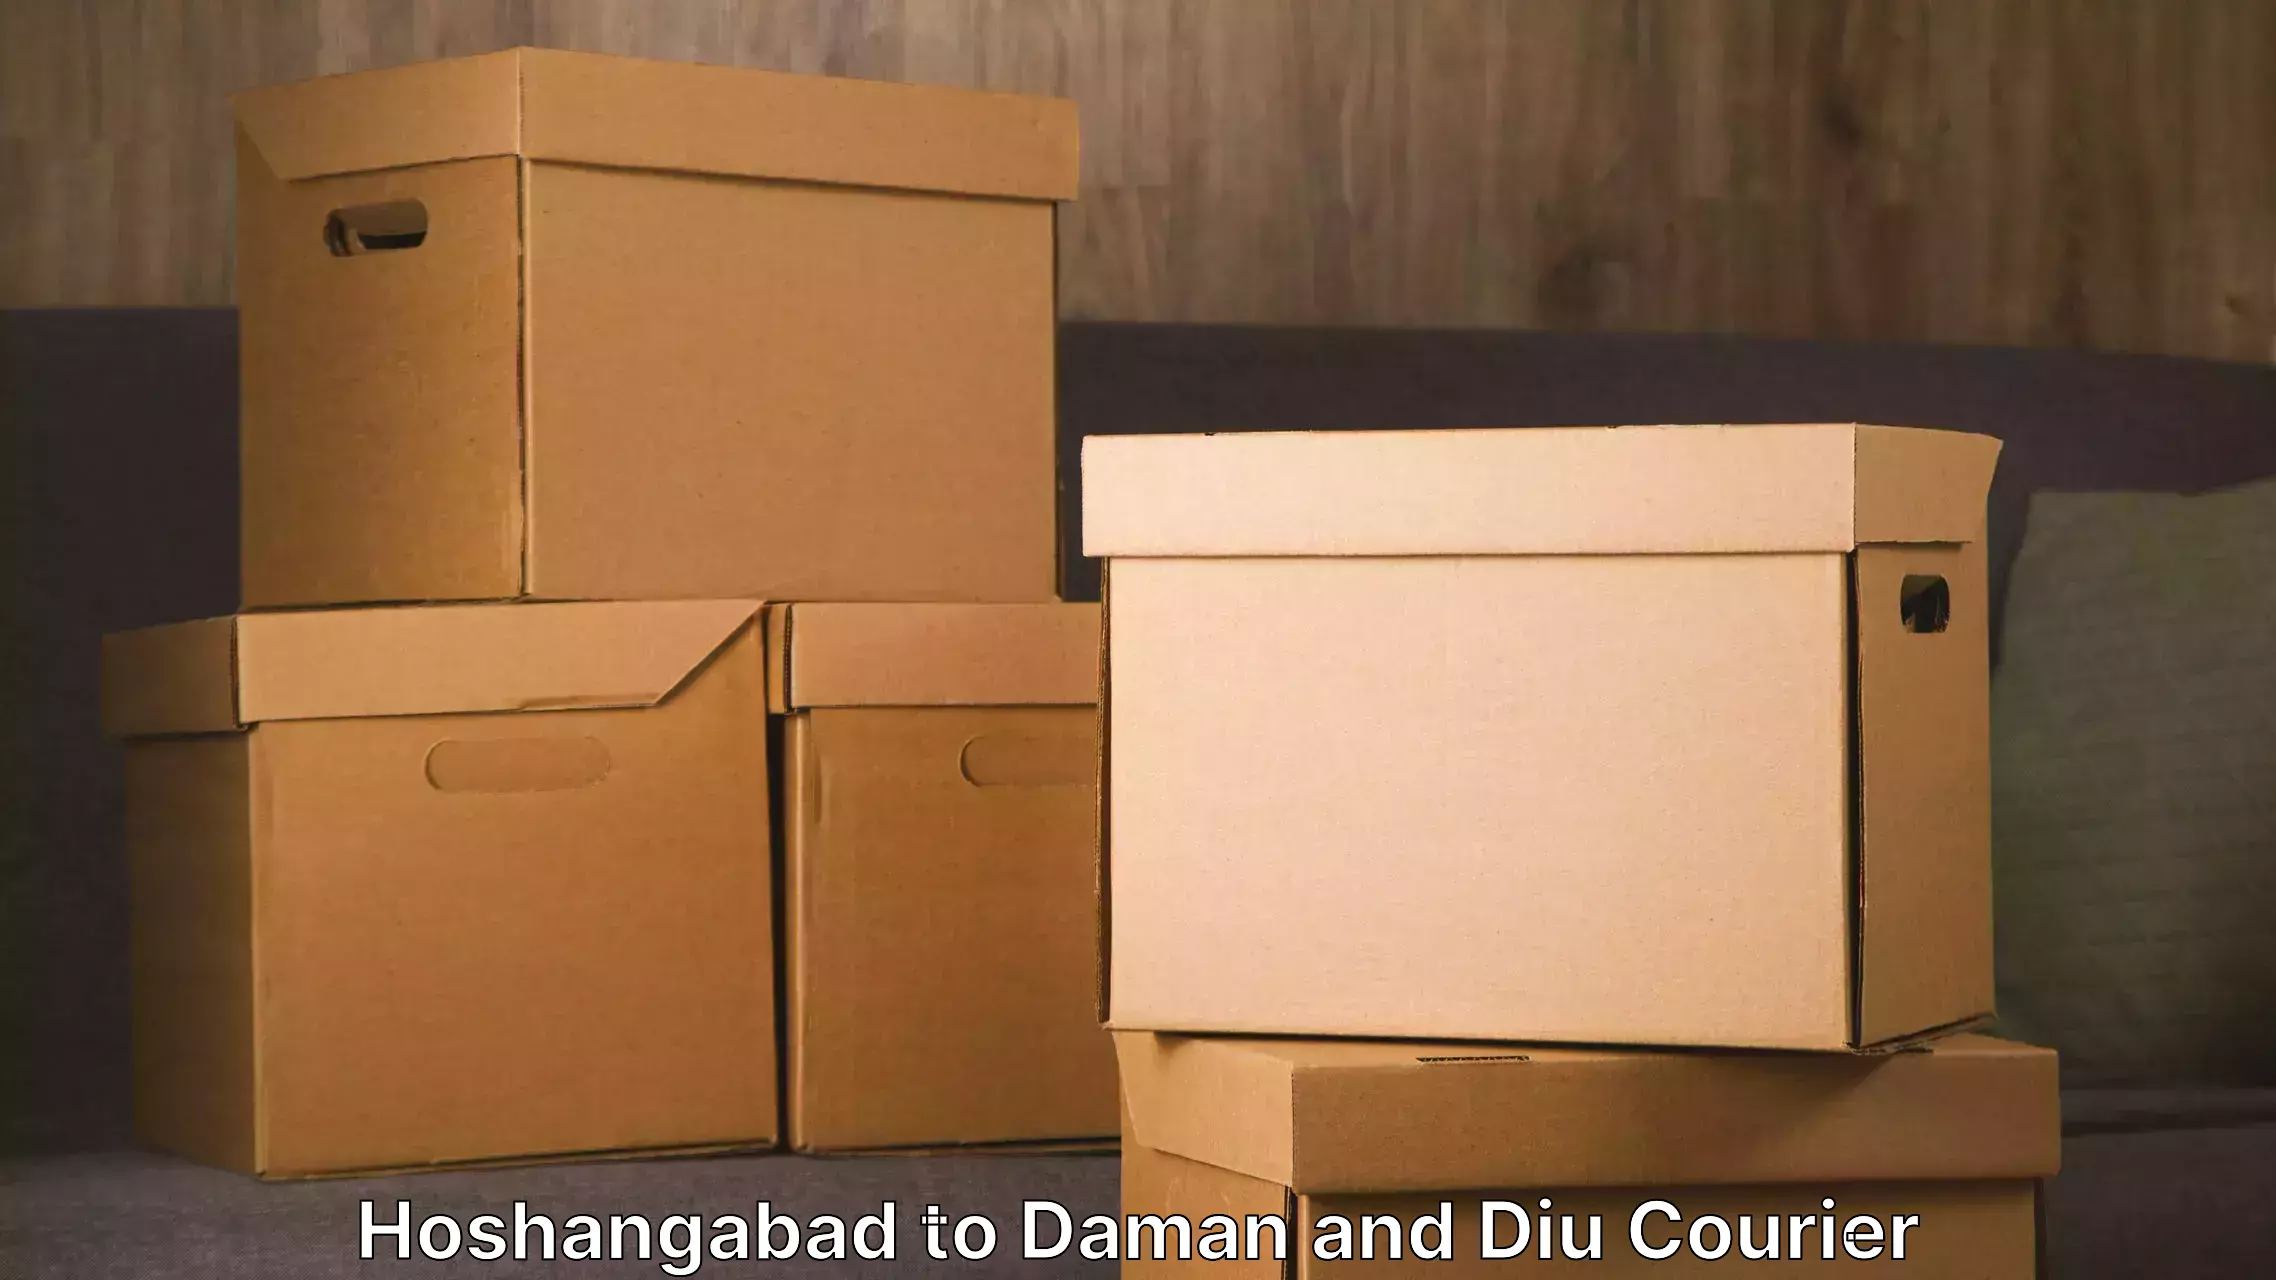 Door-to-door relocation services Hoshangabad to Daman